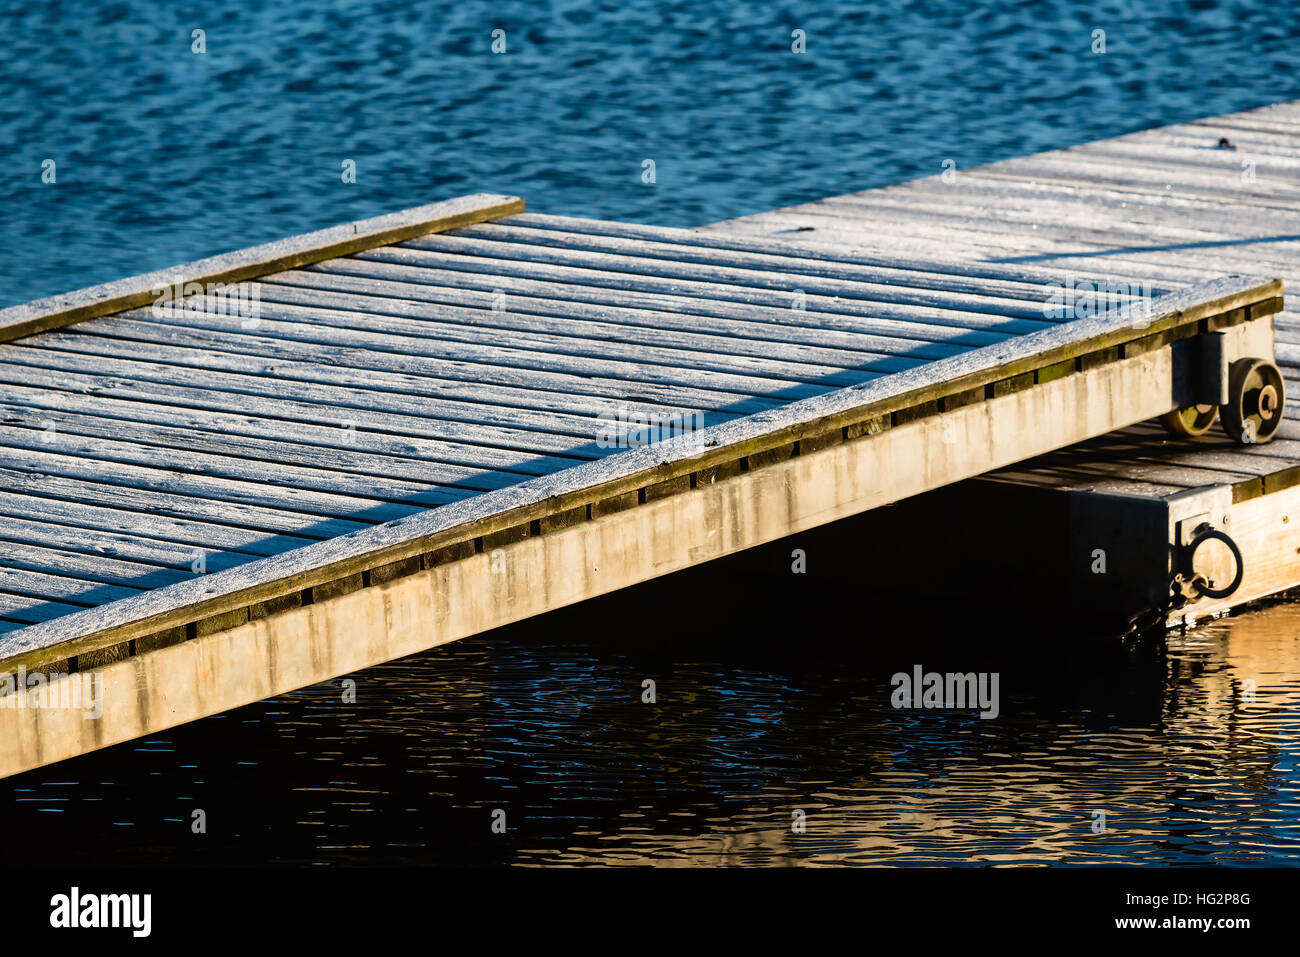 Fredda mattina dal mare. Frost coprire il molo in legno si sovrappongono che consente il movimento come il molo galleggiante si sposta con la modifica dei livelli dell'acqua. Foto Stock